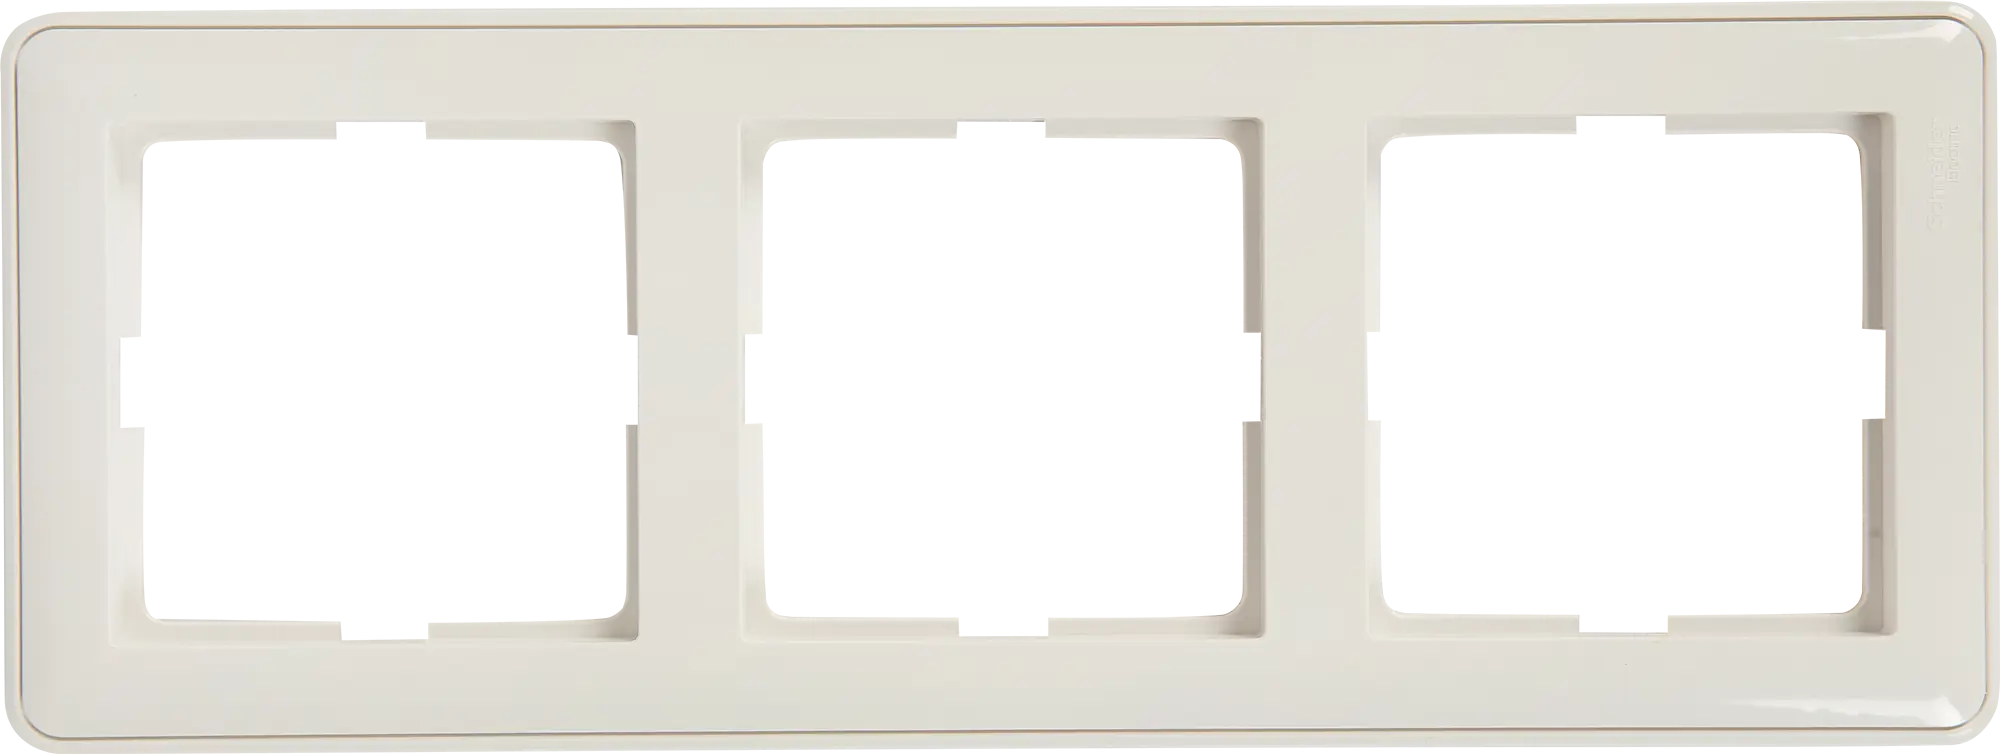 Рамка для розеток и выключателей Schneider Electric W59 3 поста, цвет белый лицевая панель для двух сенсорных выключателей и розетки 2 клавиши livolo bb c7 c1 c1 sr 11